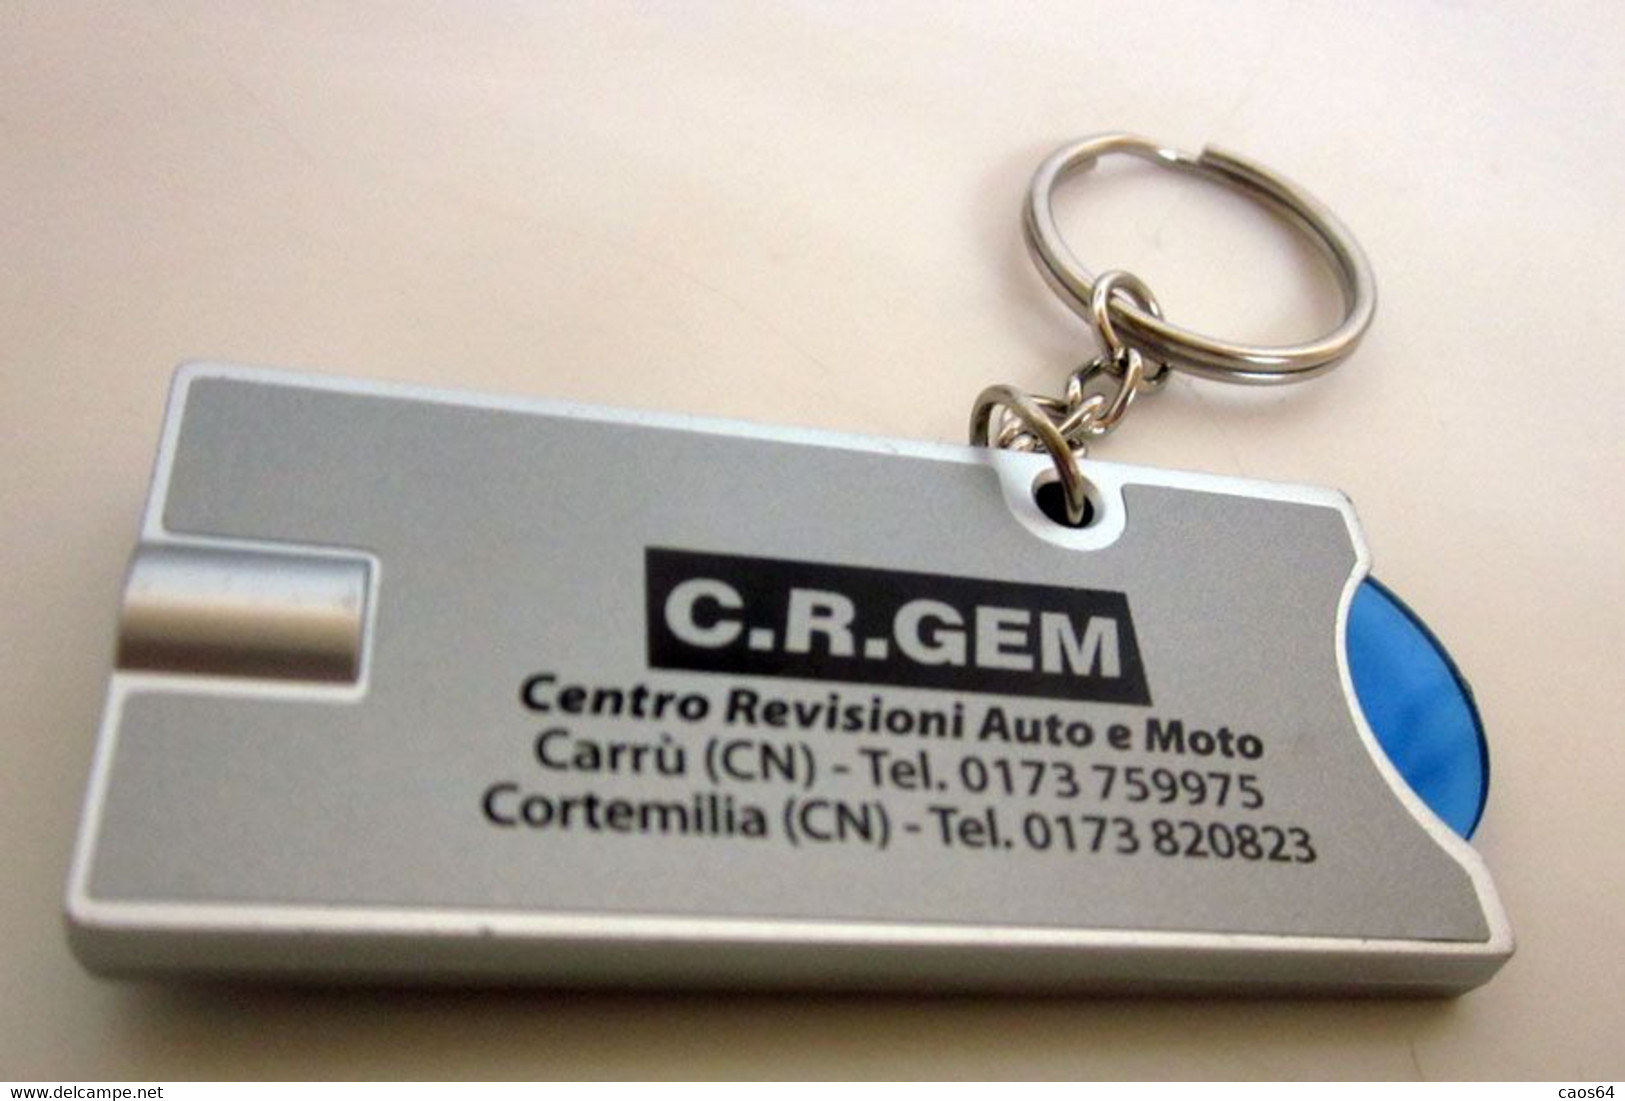 C.R.GEM CENTRO REVISIONI CORTEMILIA CUNEO LED PORTACHIAVI - Llaveros